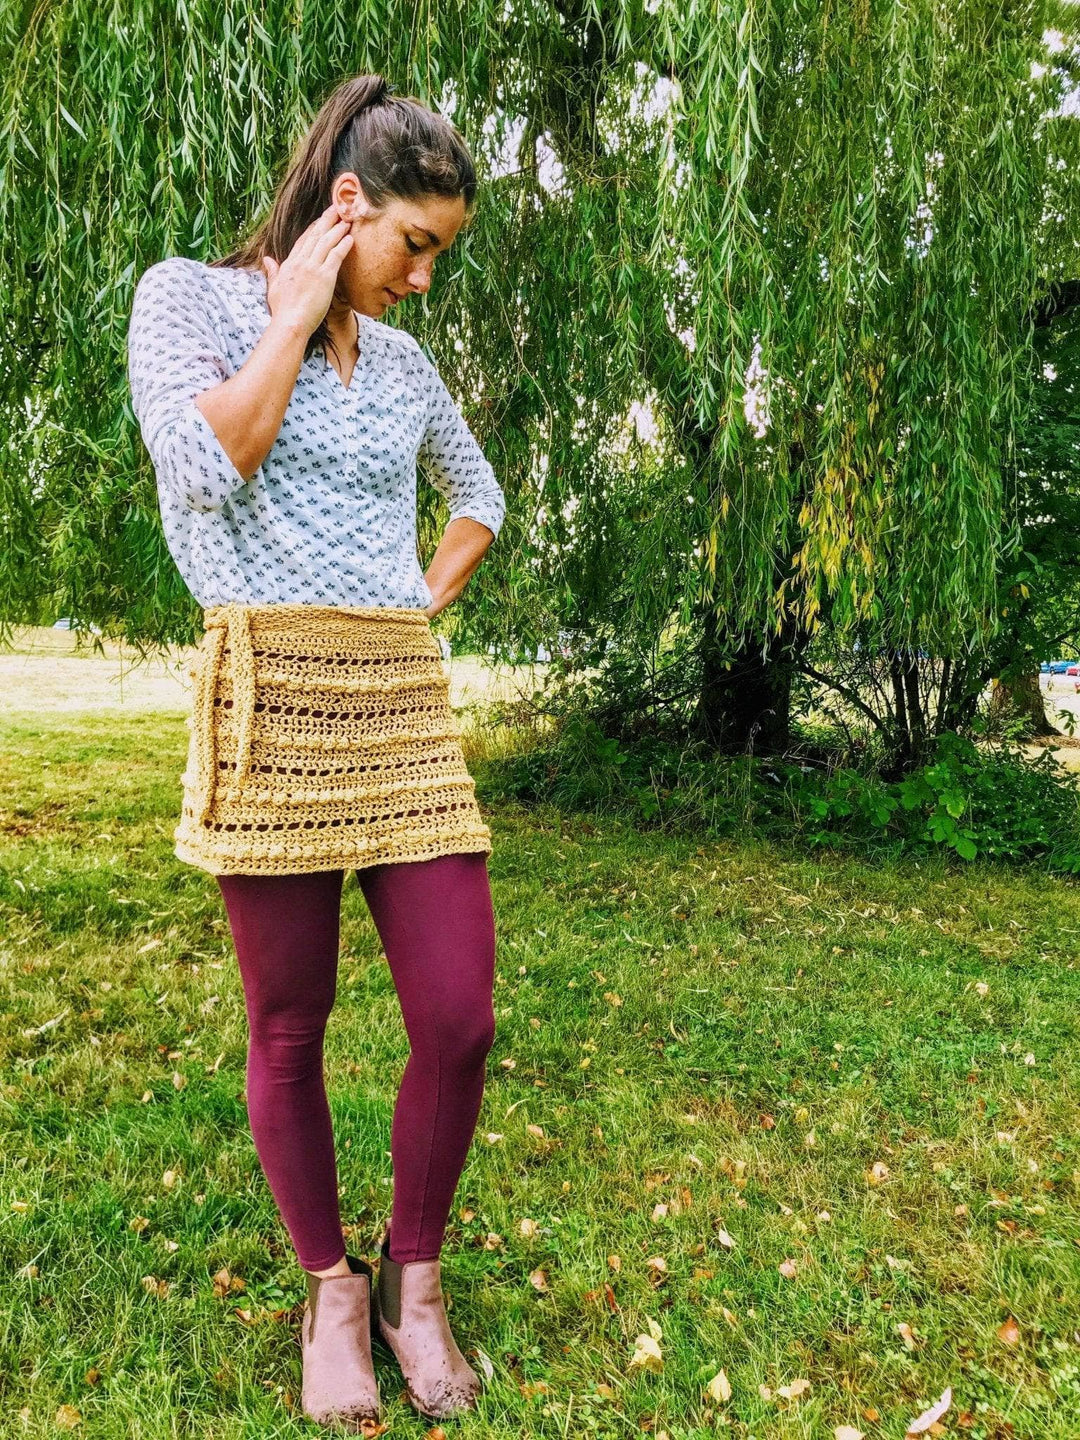 A woman wearing a beige crocheted skirt outside